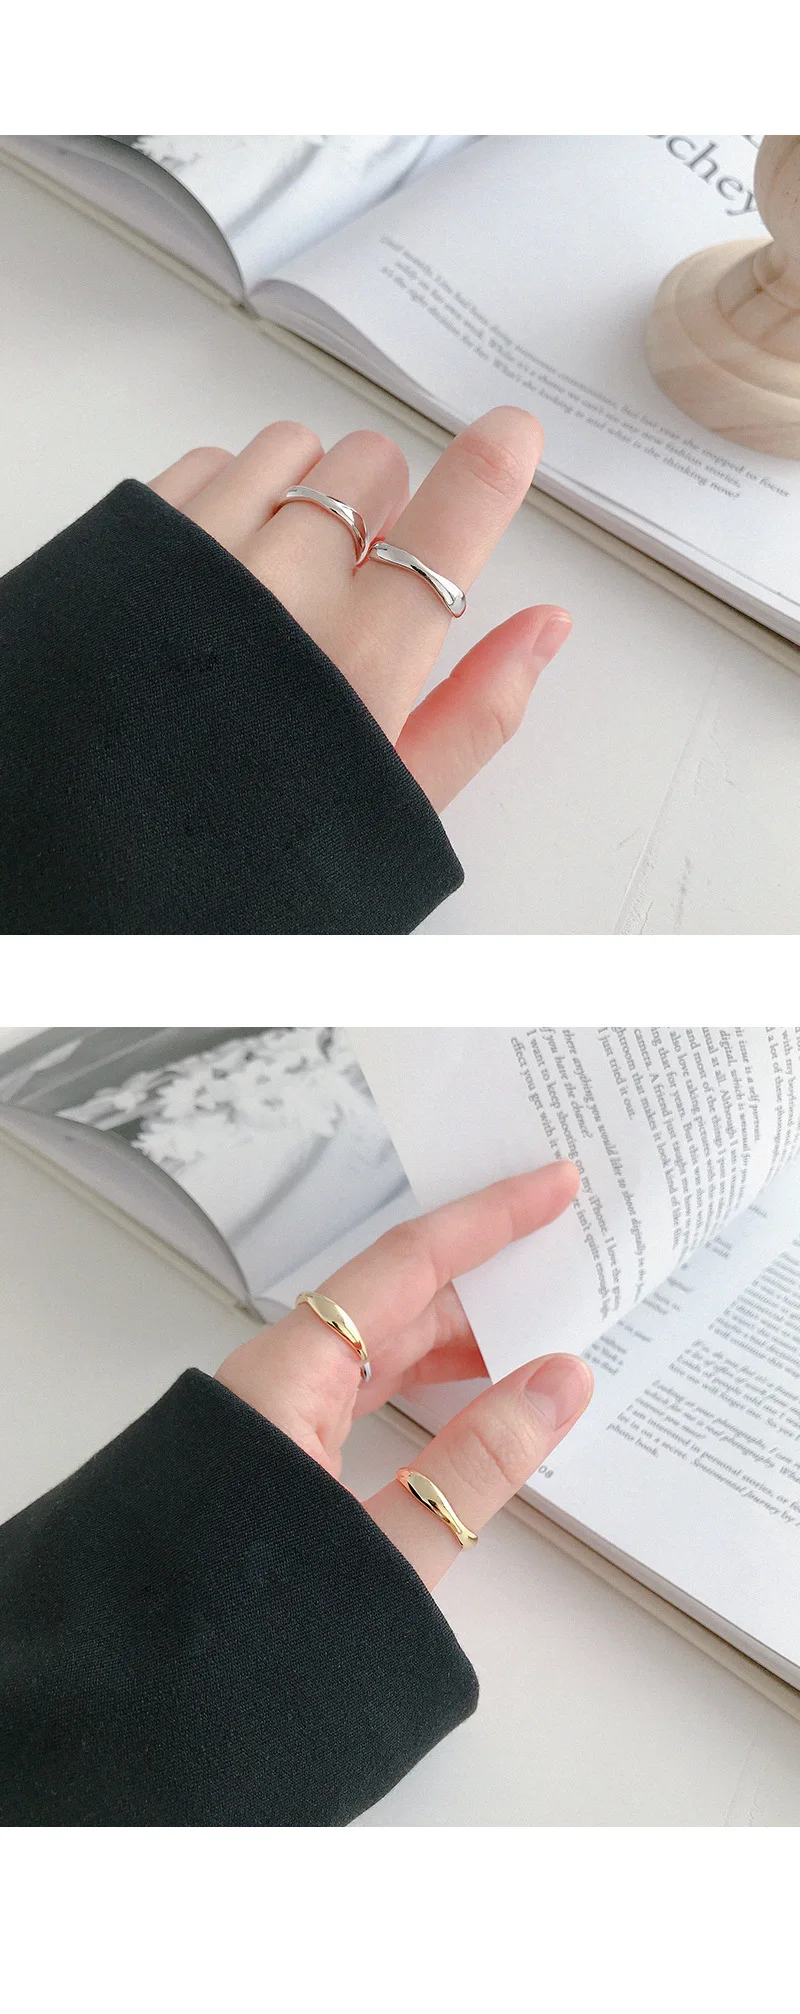 F.I.N.S необычное скрученное серебряное кольцо 925 стекируемые женские кольца на палец корейская мода обручальные кольца для женщин хорошее ювелирное изделие